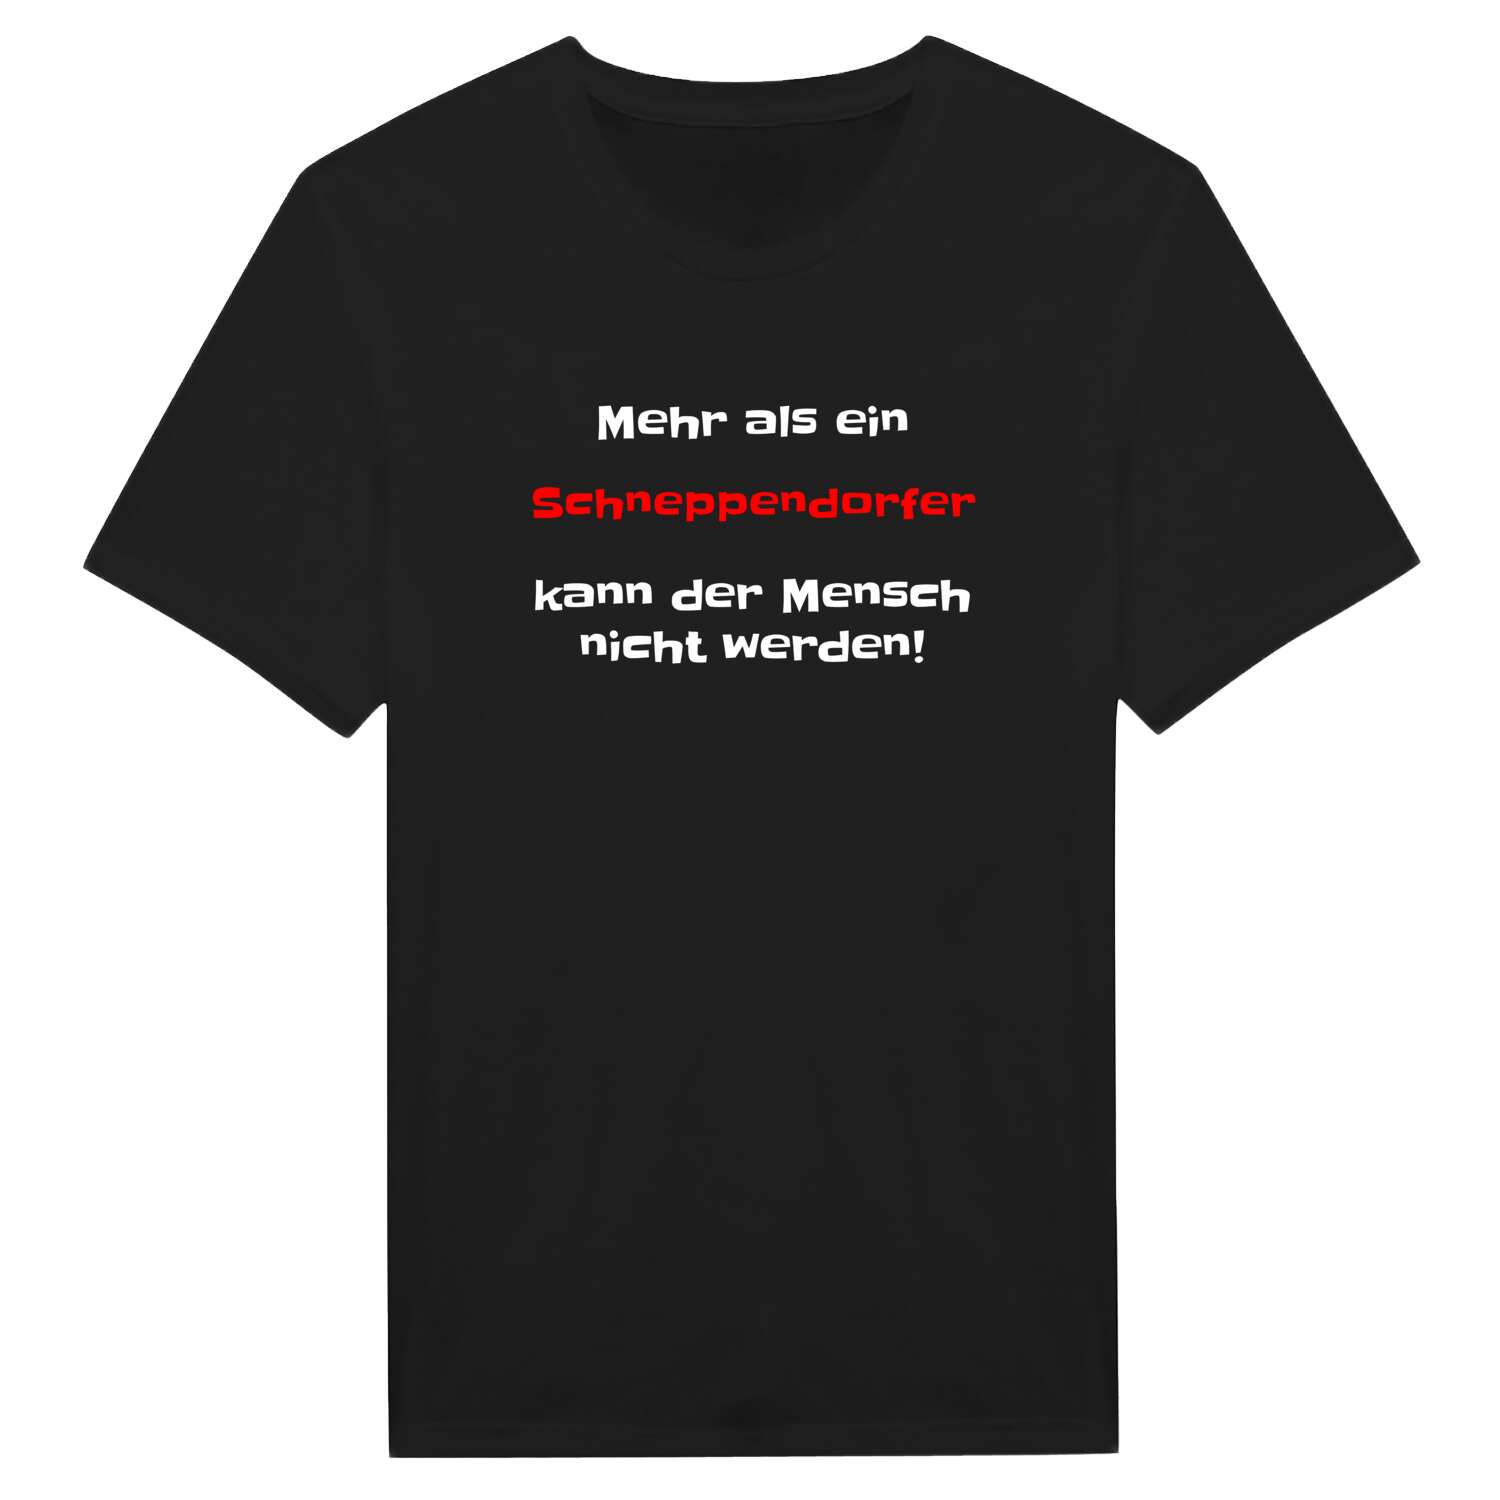 Schneppendorf T-Shirt »Mehr als ein«